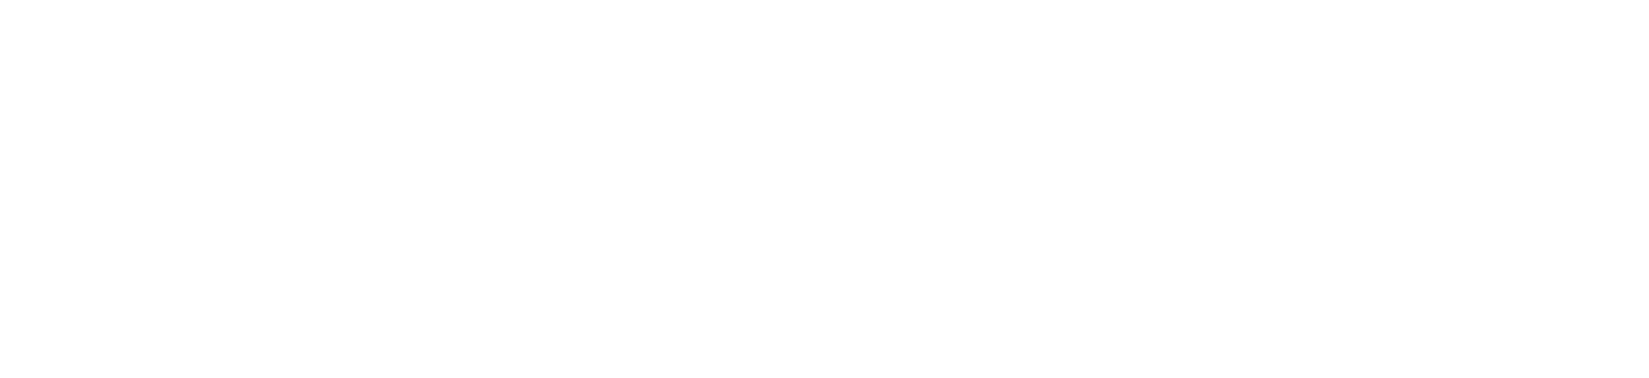 Boeing logo grand pour les fonds sombres (PNG transparent)